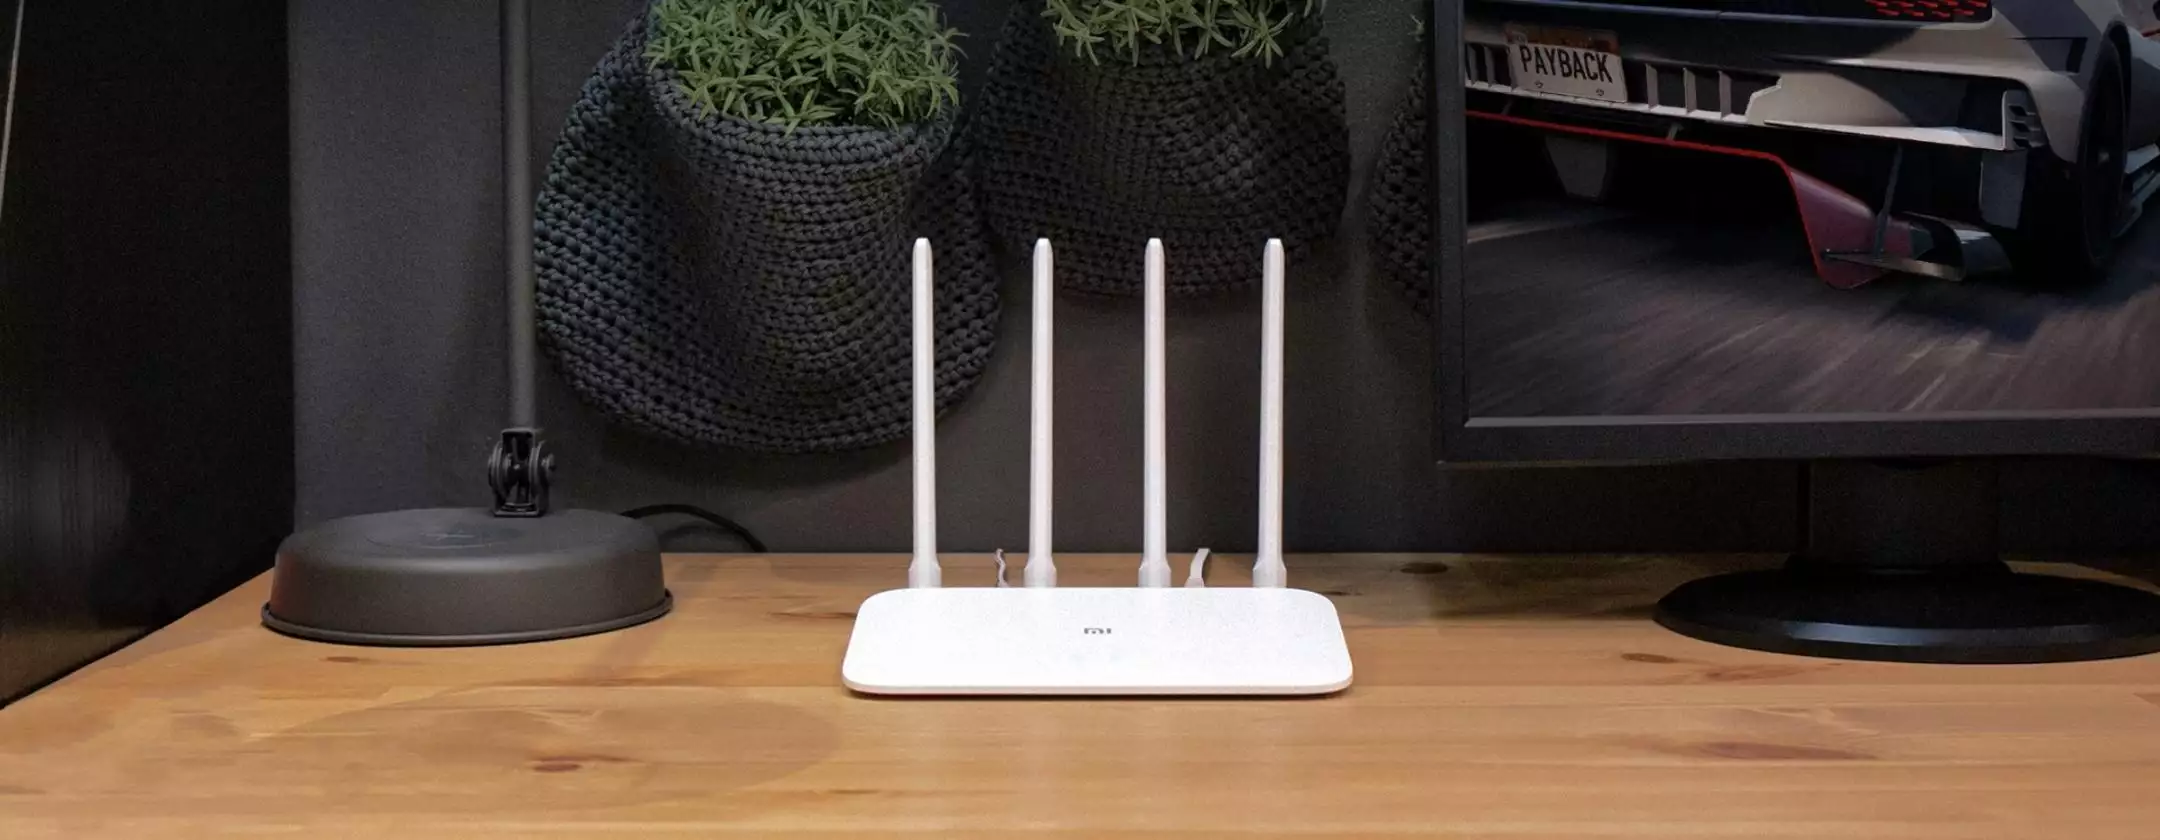 WiFi stabile in tutta la casa grazie al router di Xiaomi